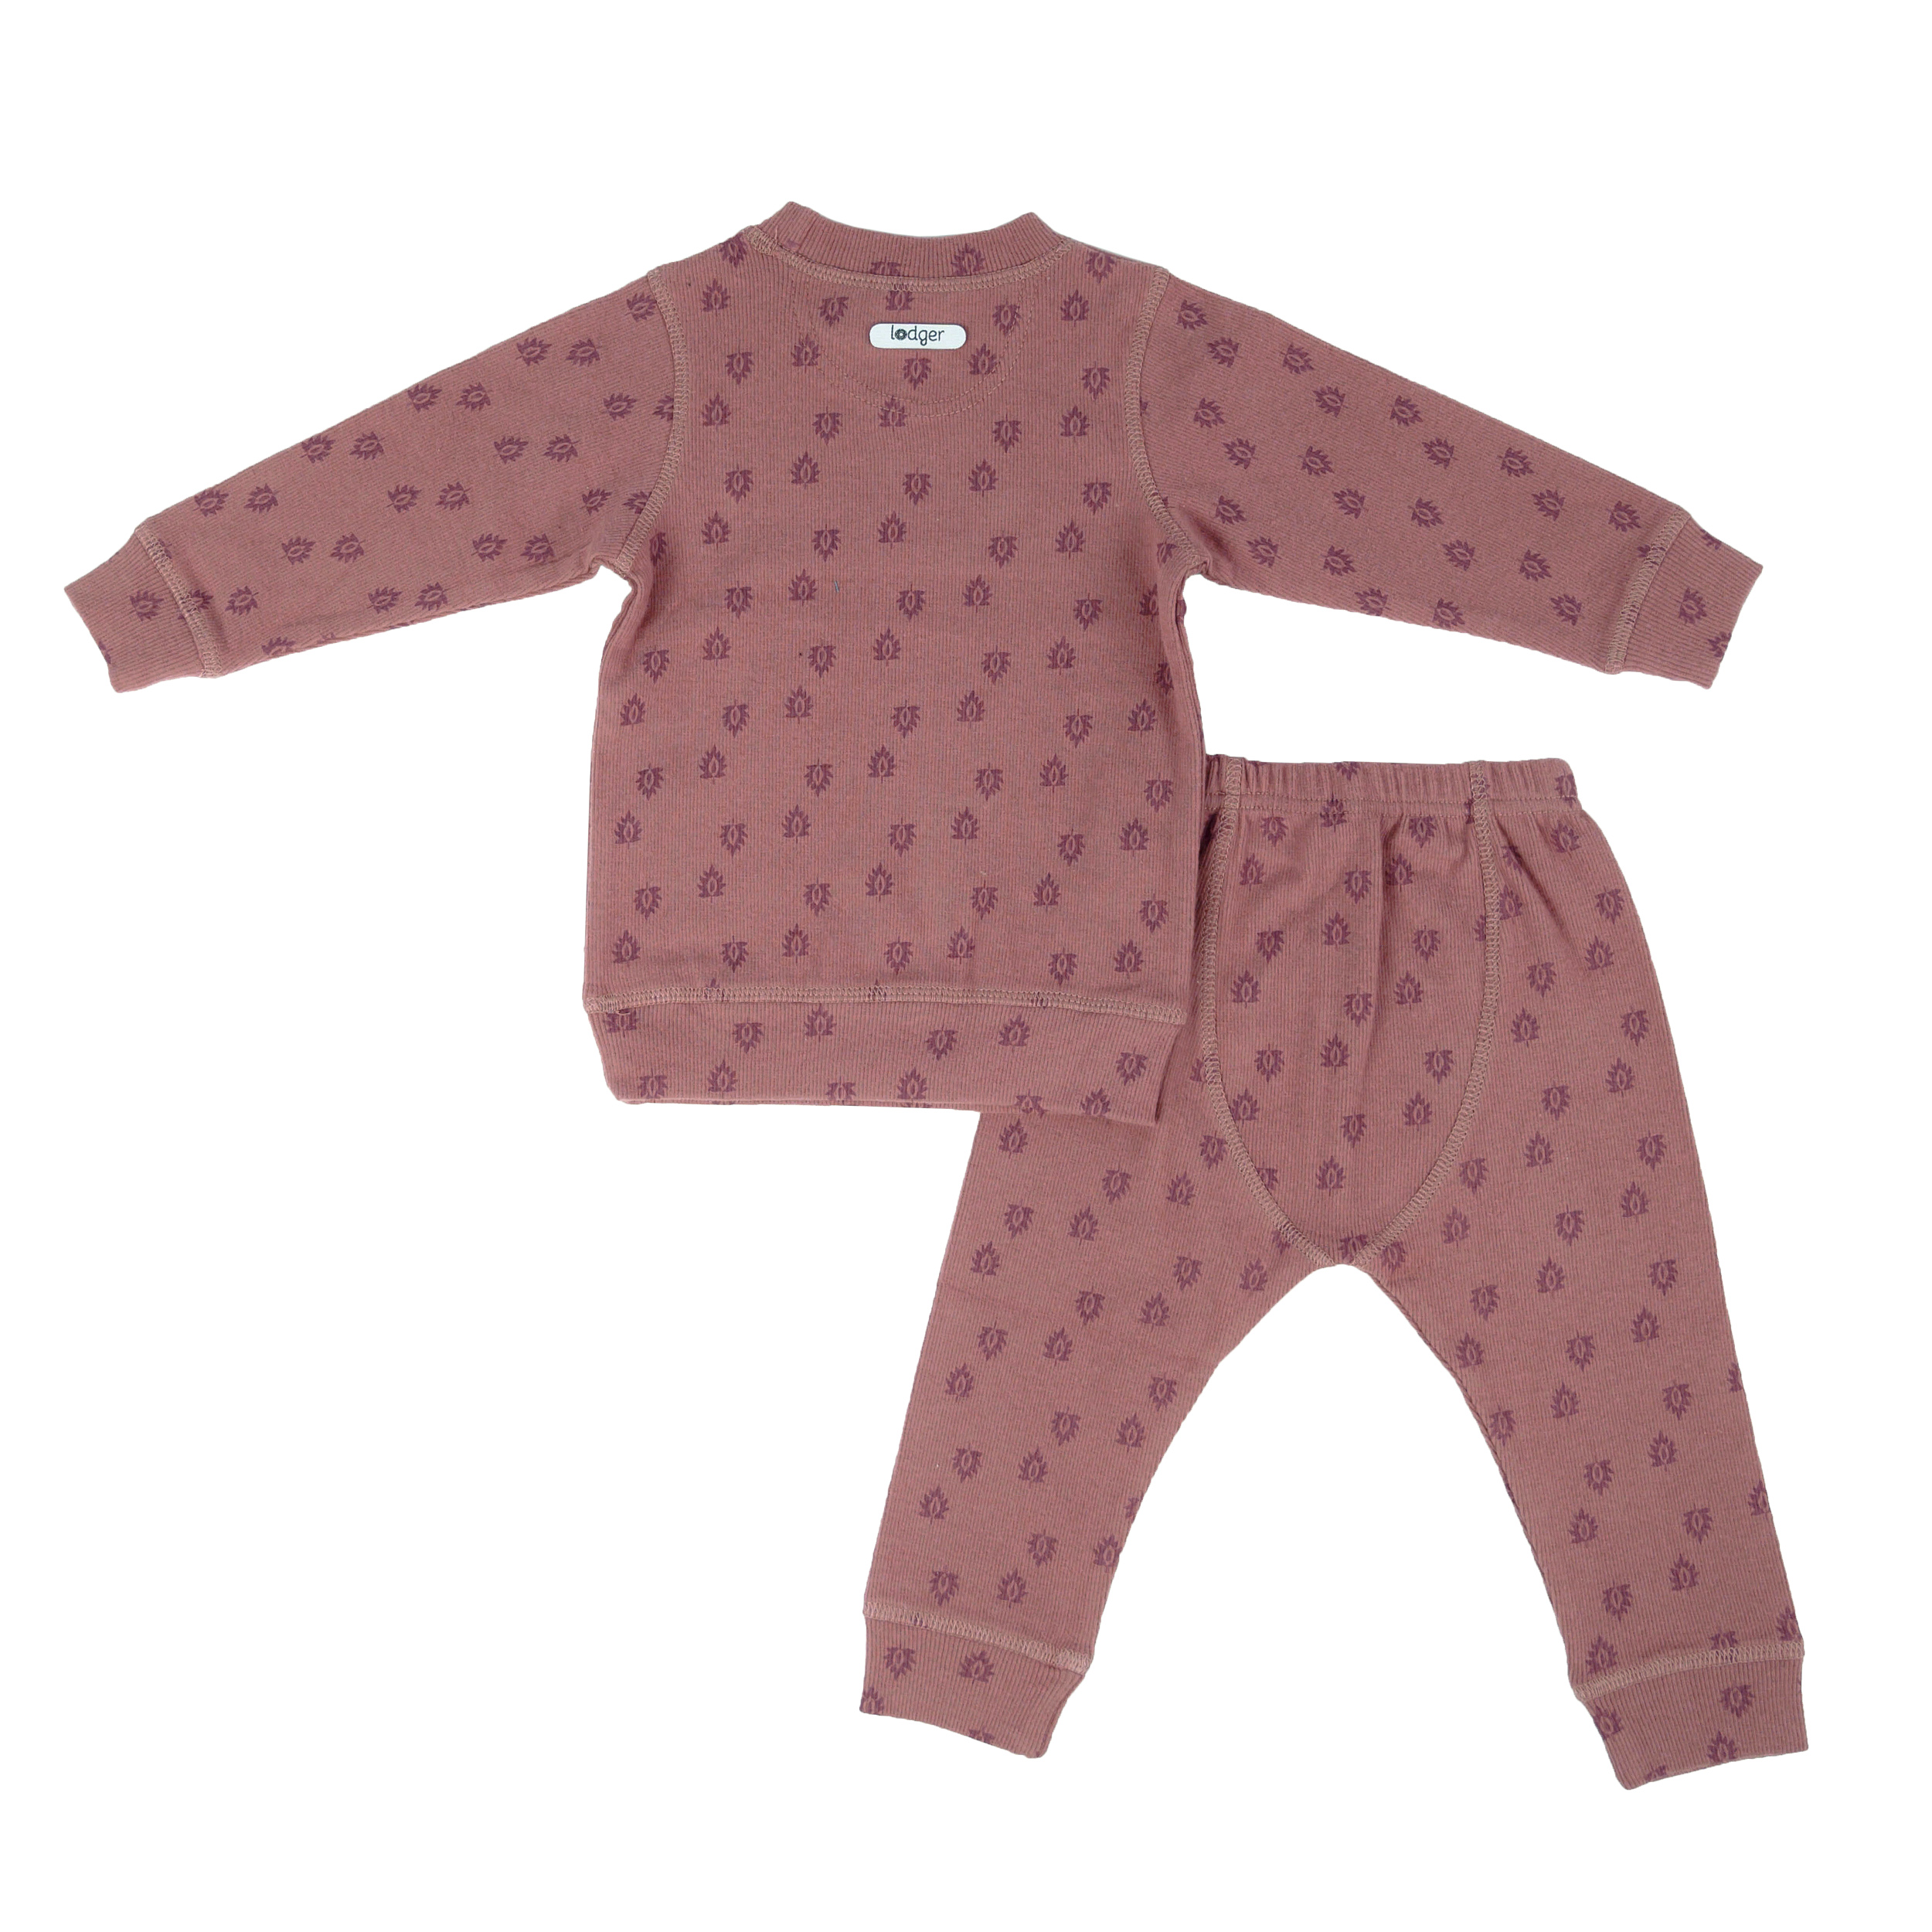 Contractie Herrie open haard Baby Pyjama Maat 92 Clearance, 59% OFF | xevietnam.com